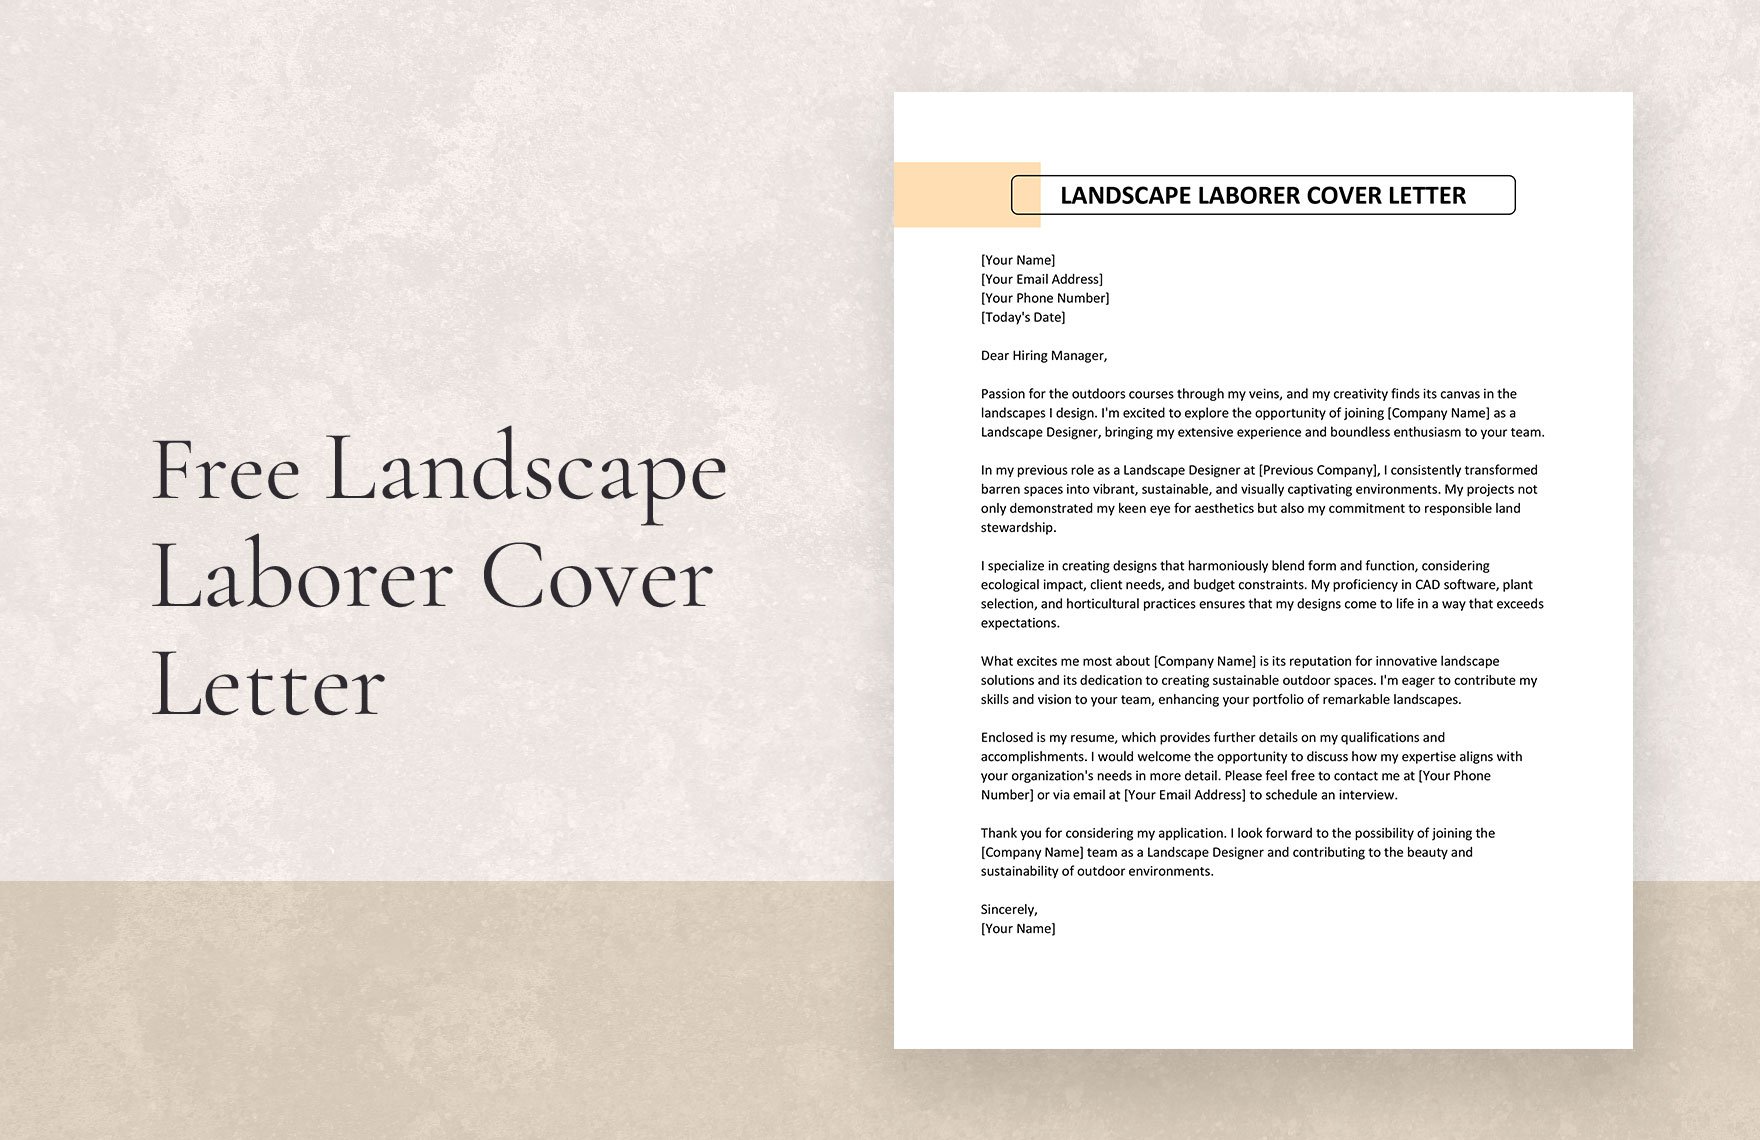 Landscape Laborer Cover Letter in Word, Google Docs